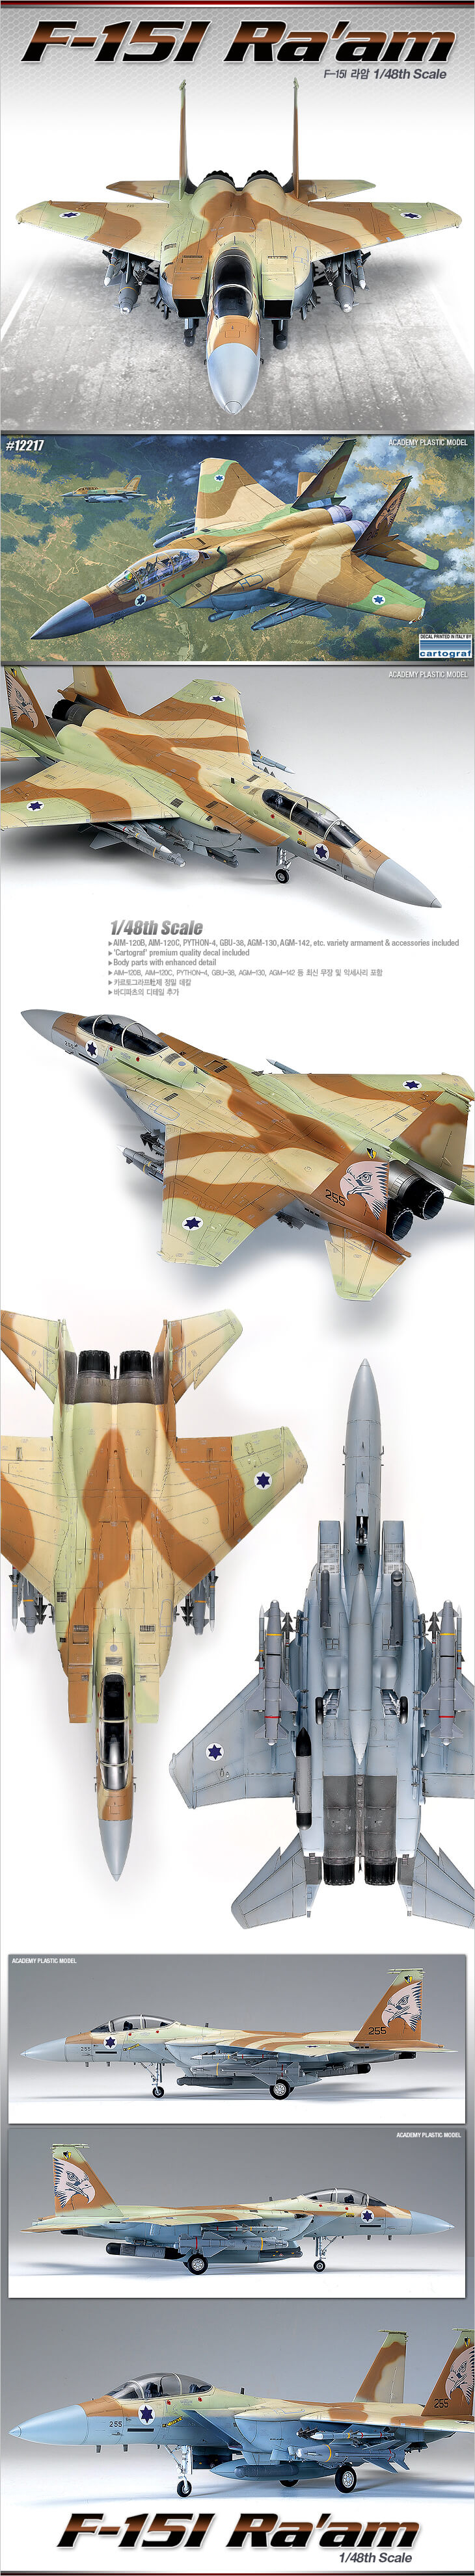 โมเดลเครื่องบินรบ F-15I RA'AM 1/48